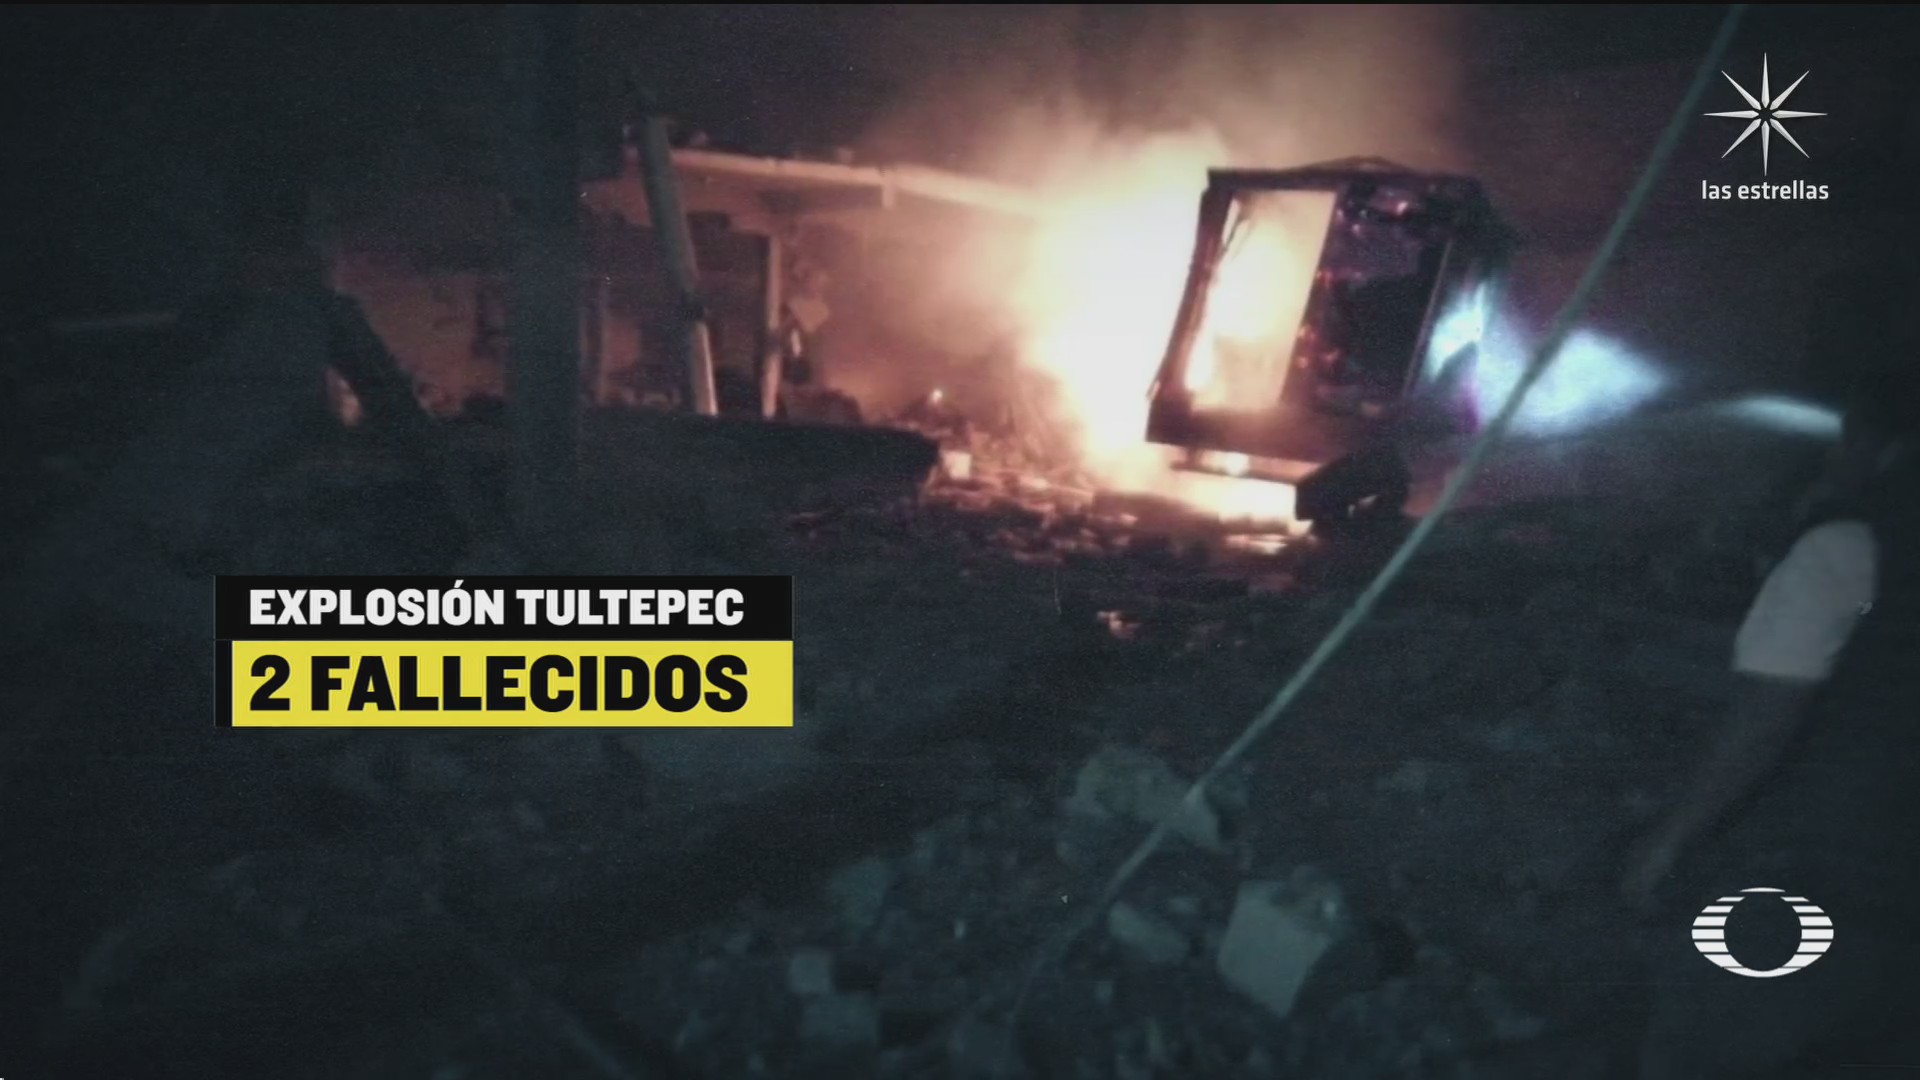 explosion de polvorin provoca tragedia en tultepec estado de mexico